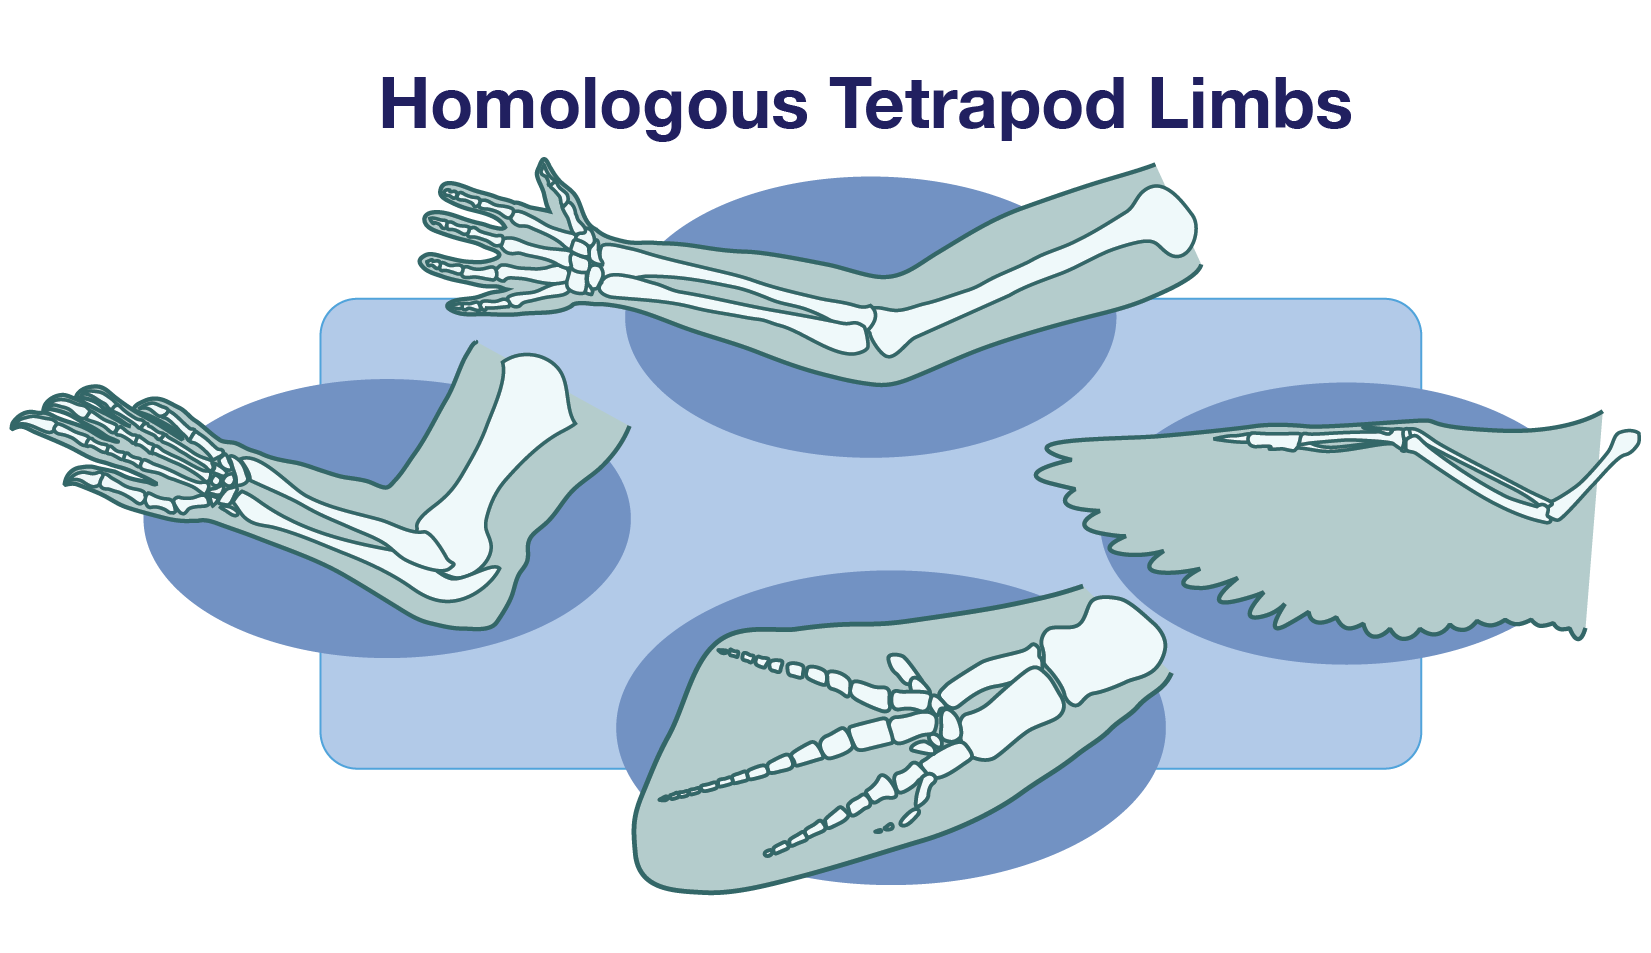 Homologous Tetrapod Limbs